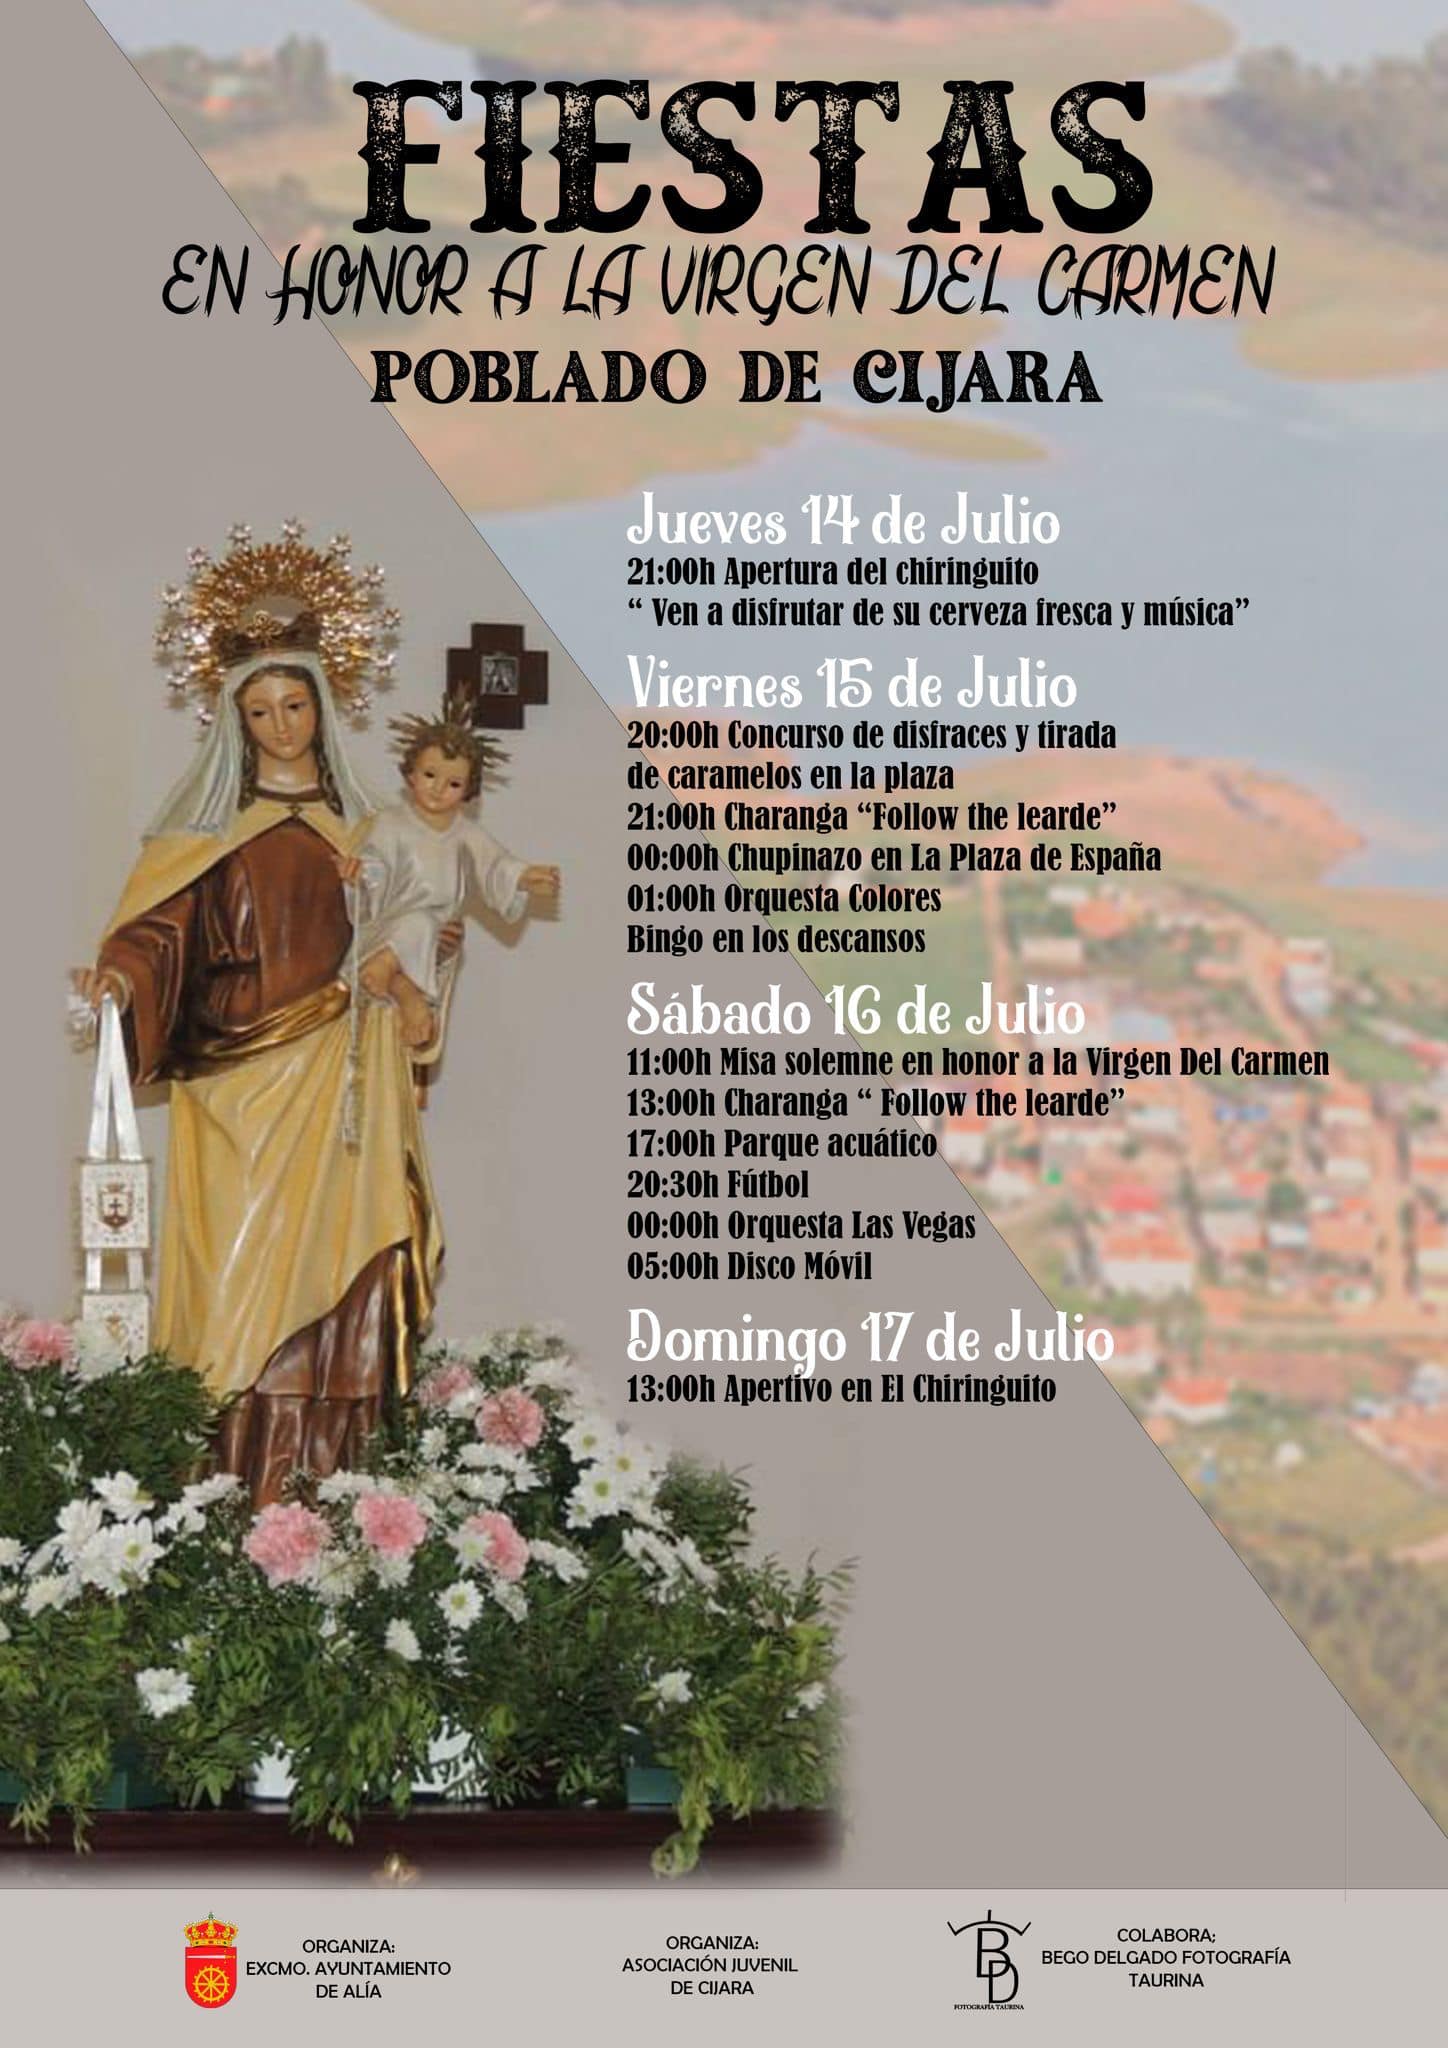 Fiestas en honor a la Virgen del Carmen (2022) - Poblado de Cijara (Cáceres)